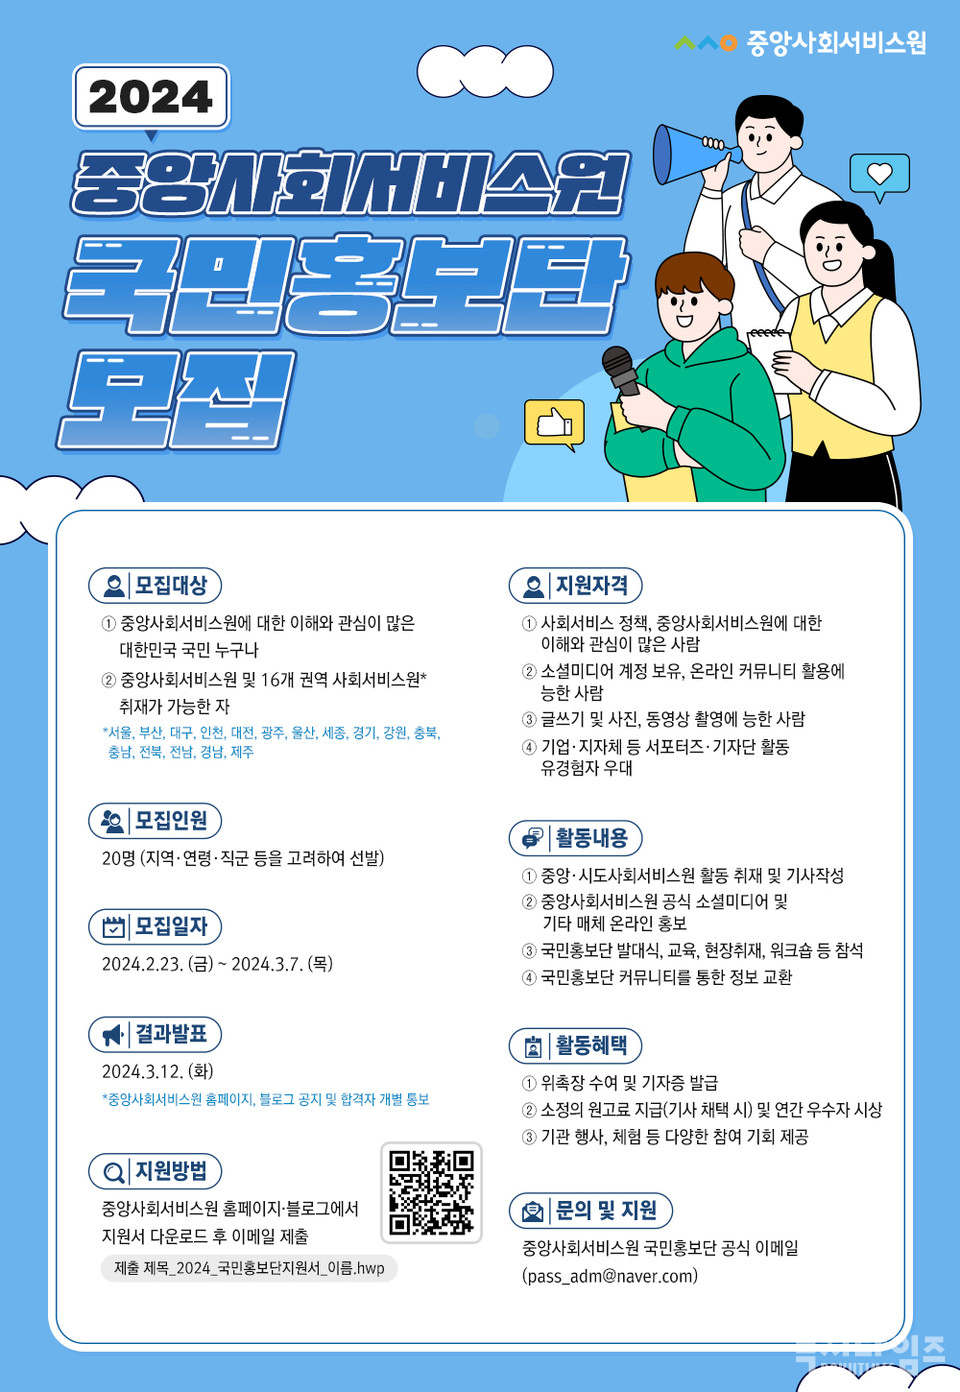 중앙사횝서비스원 국민홍보단 모집 포스터